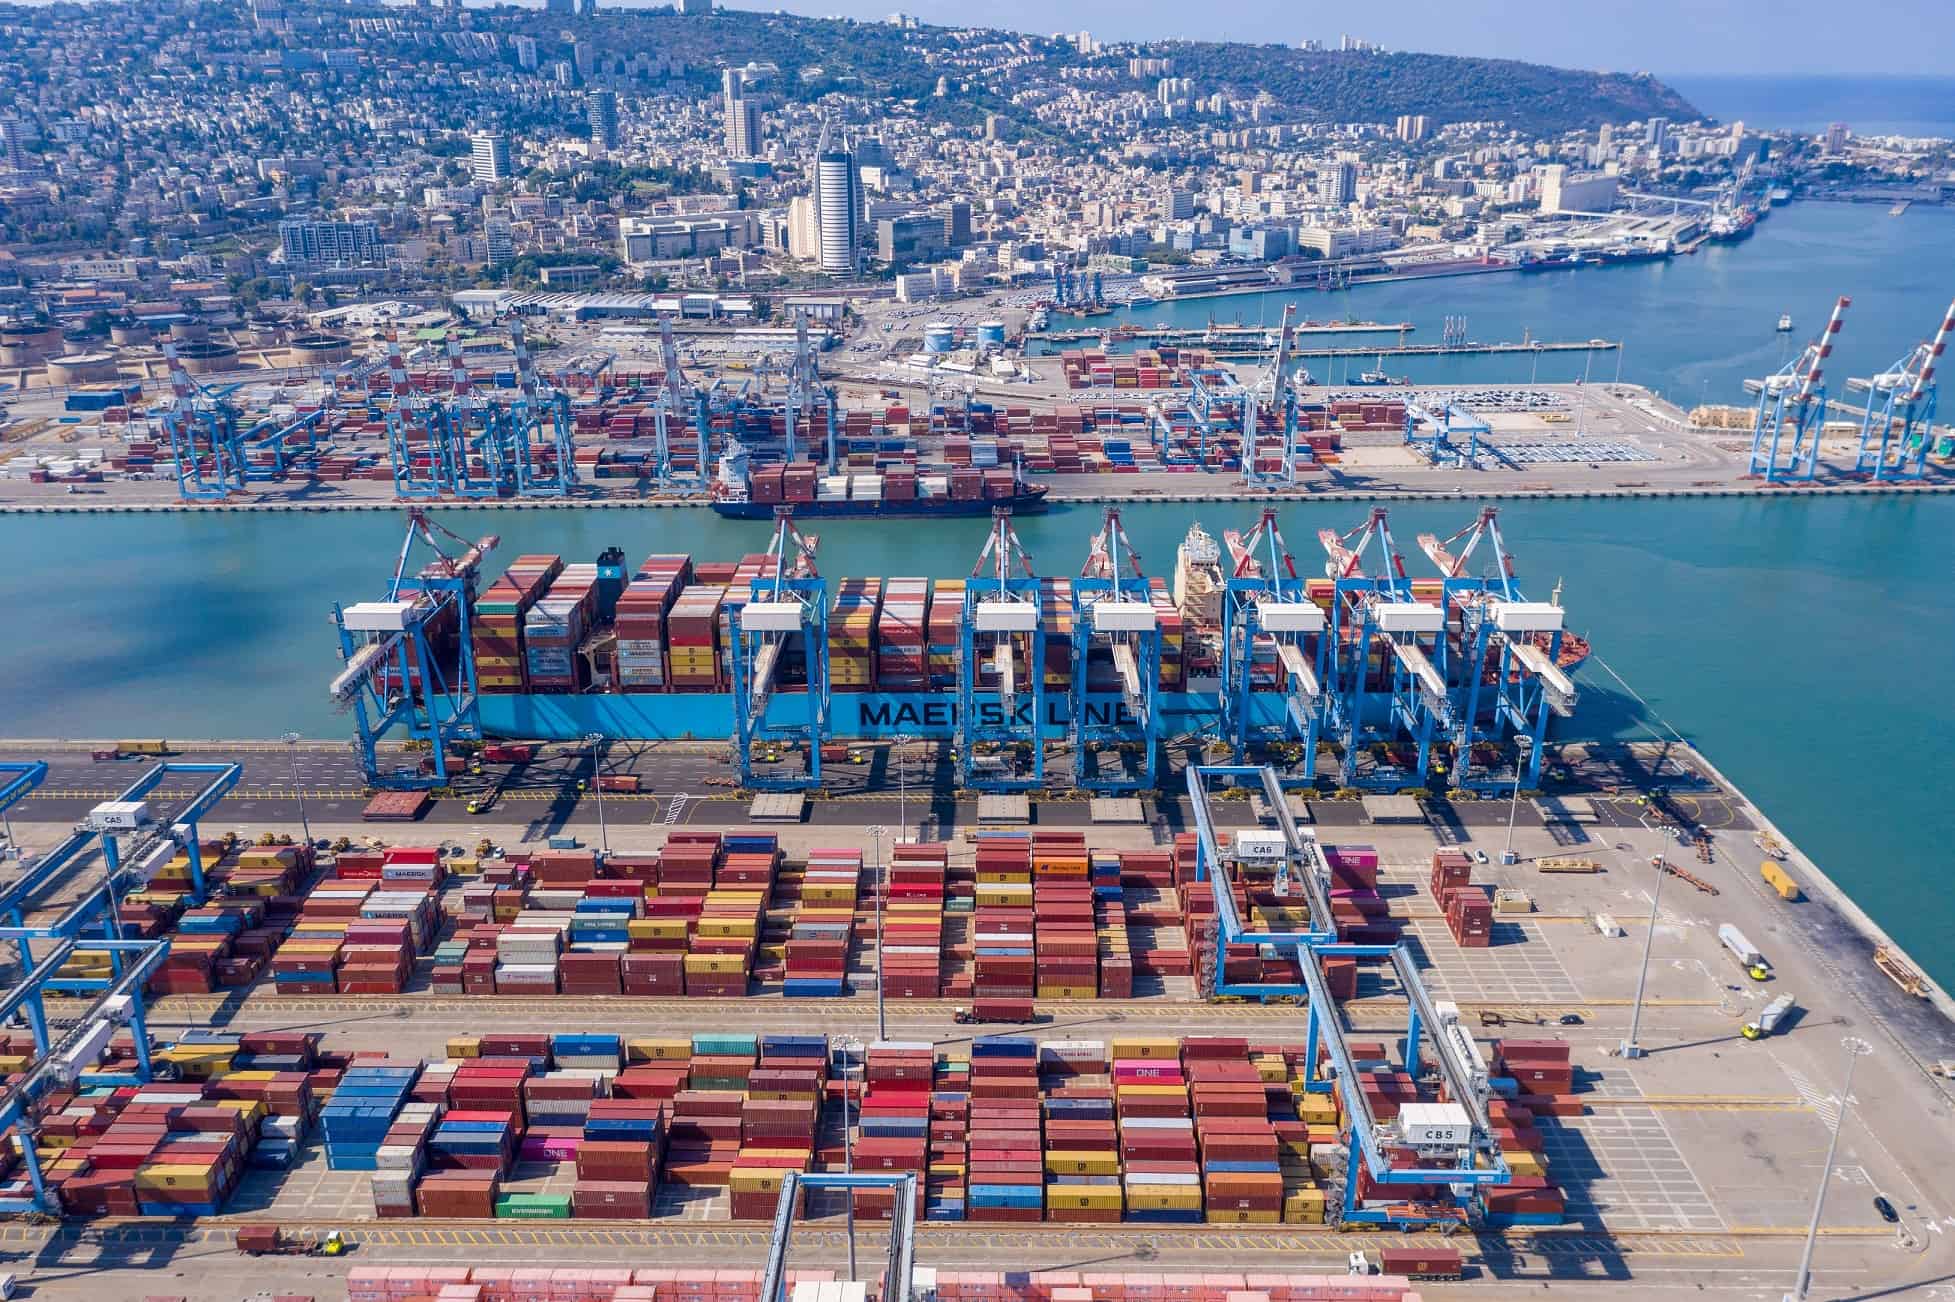 נמל חיפה צילום על שם צלם ליאור פתאל מאושר לשימוש